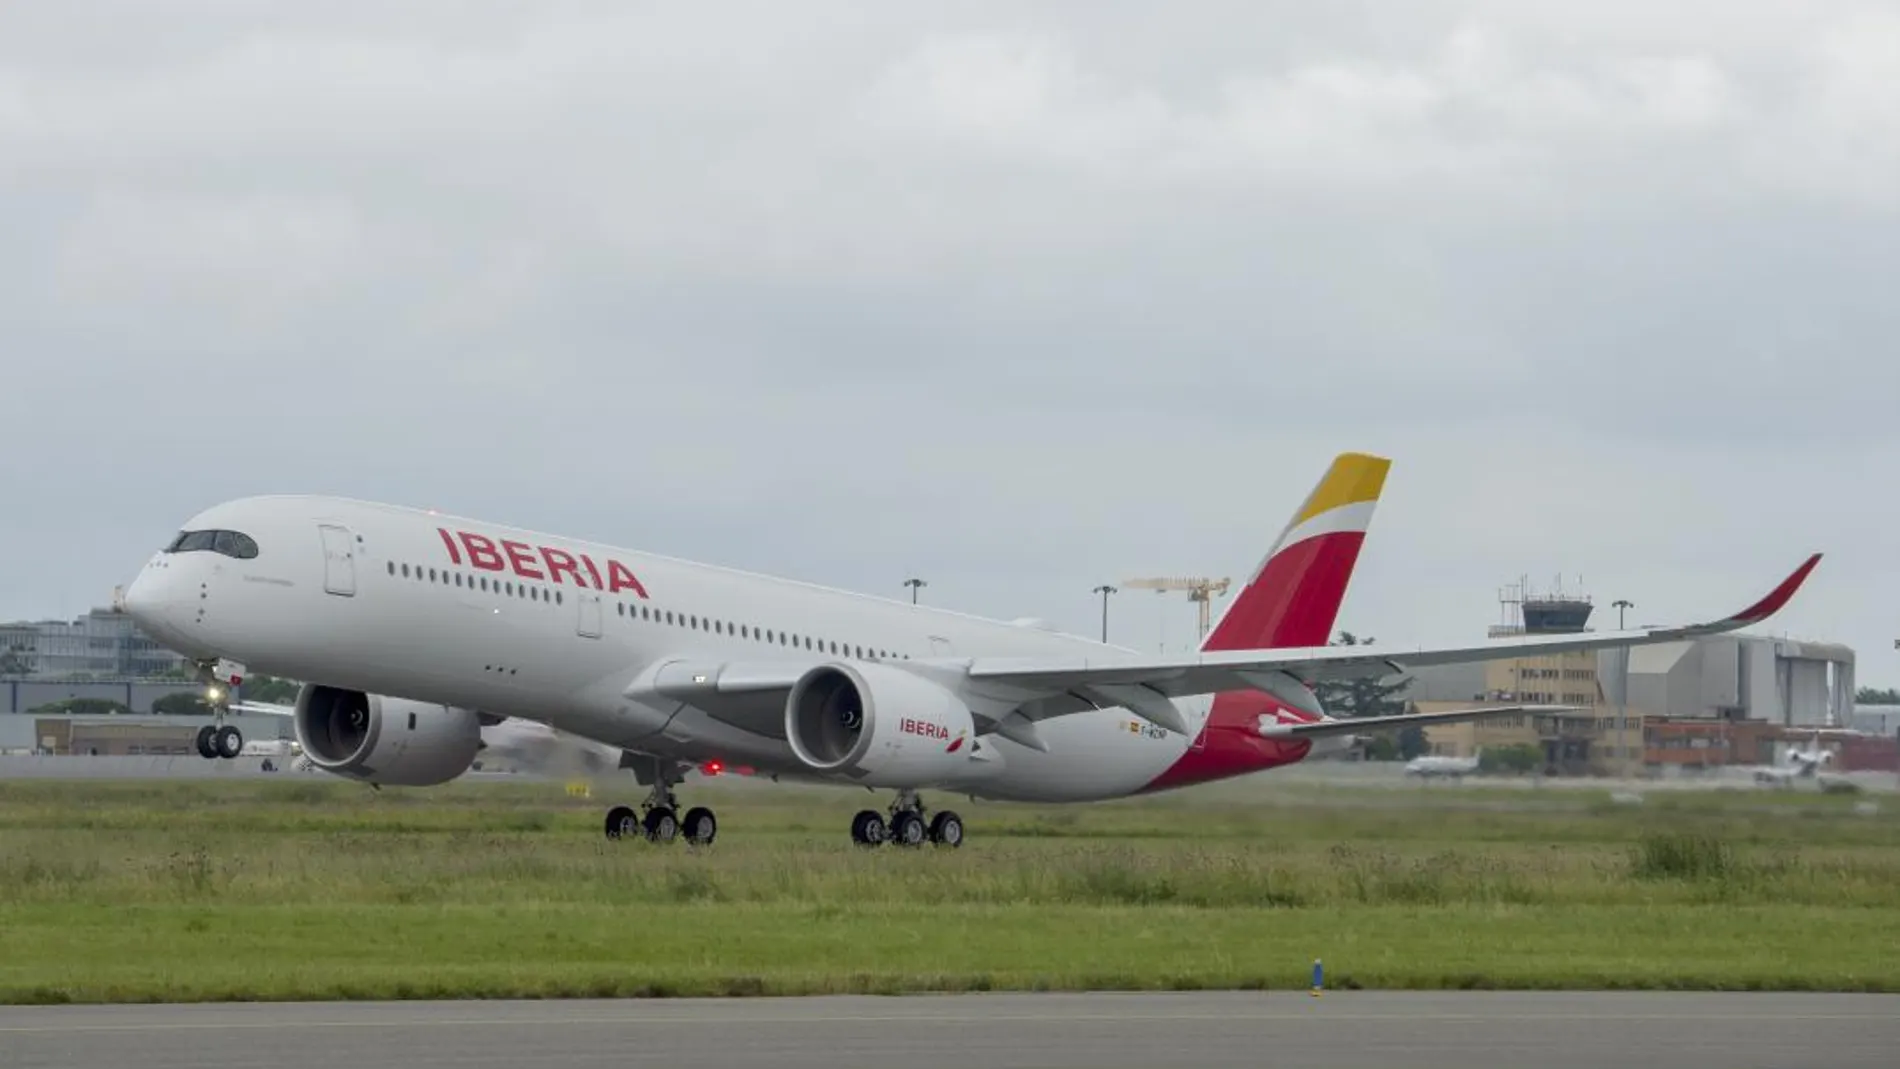 El A350 de Iberia, Plácido Domingo, surca los cielos por primera vez El A350 de Iberia, Plácido Domingo, surca los cielos por primera vez